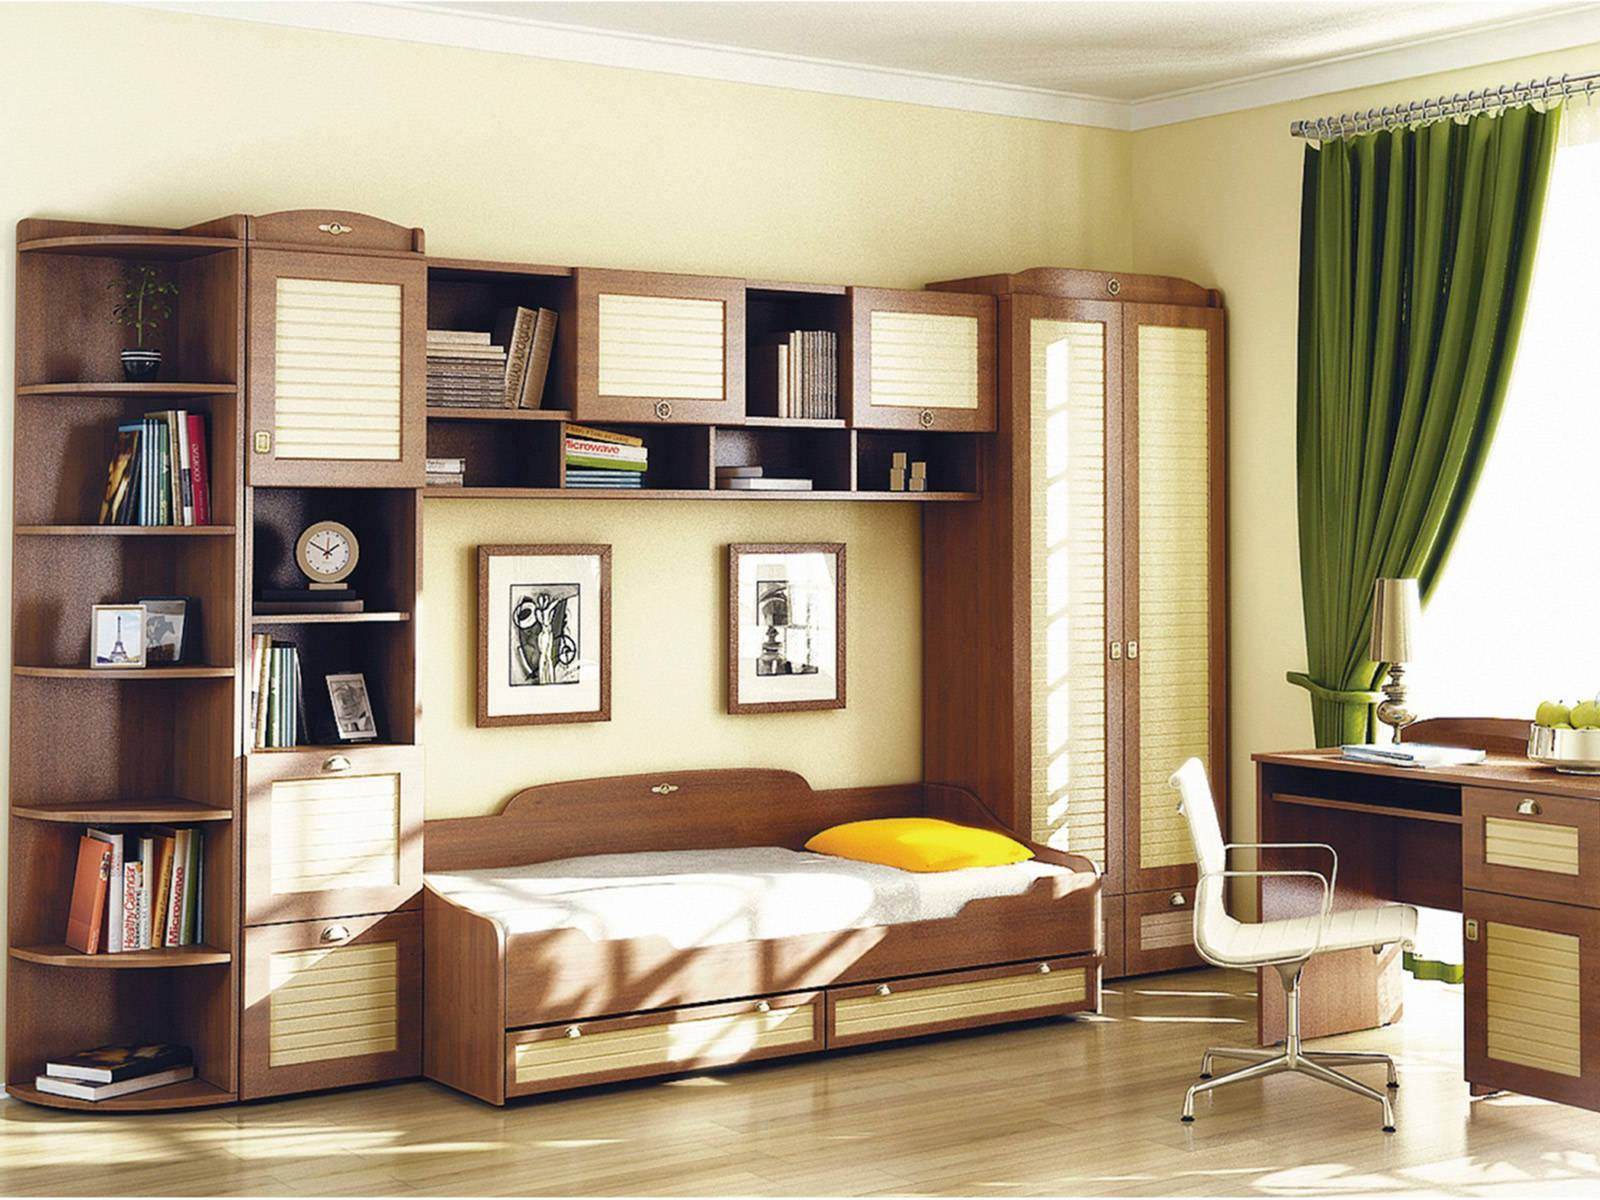 мебель бытовая мебельные гарнитуры и комплекты